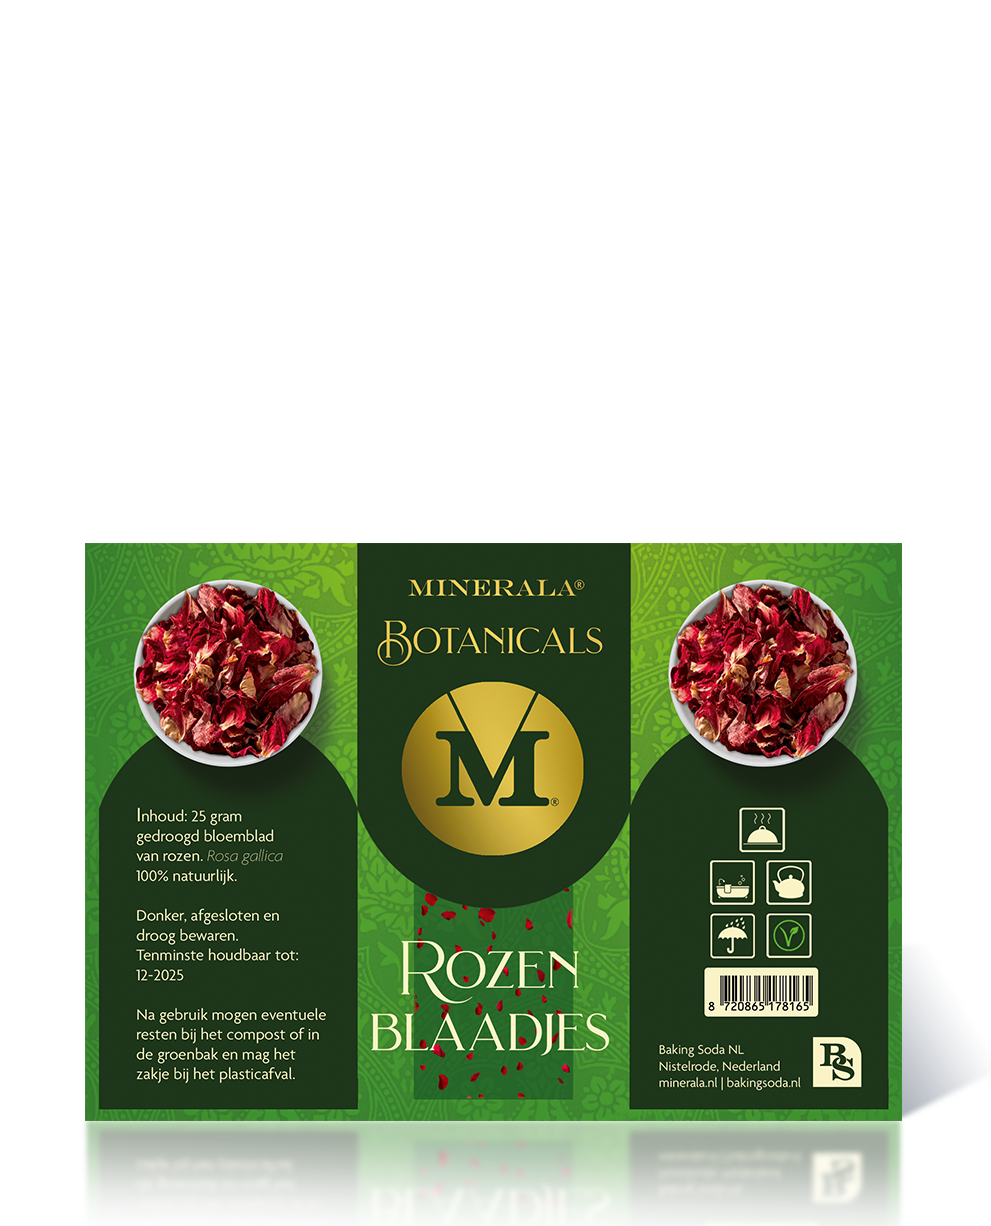 Minerala Botanicals Rozenblaadjes - Bakingsoda NL